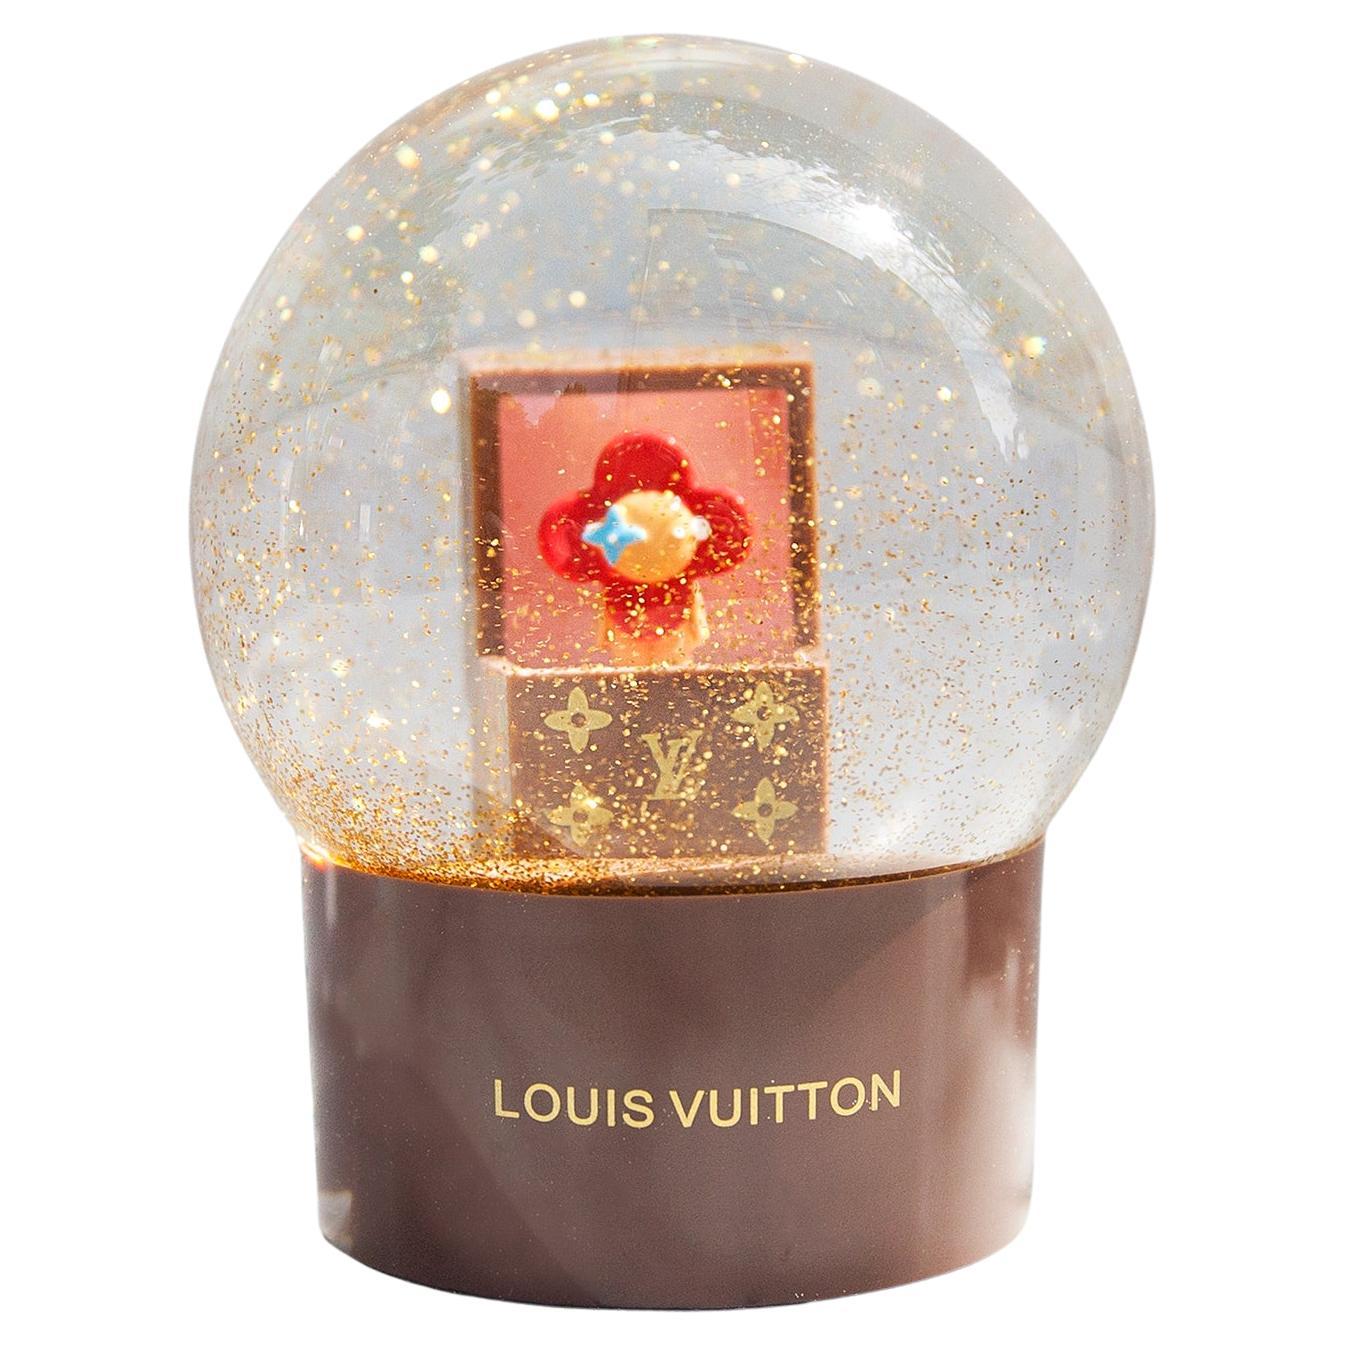 Louis Vuitton, Accents, Louis Vuitton Snow Globe